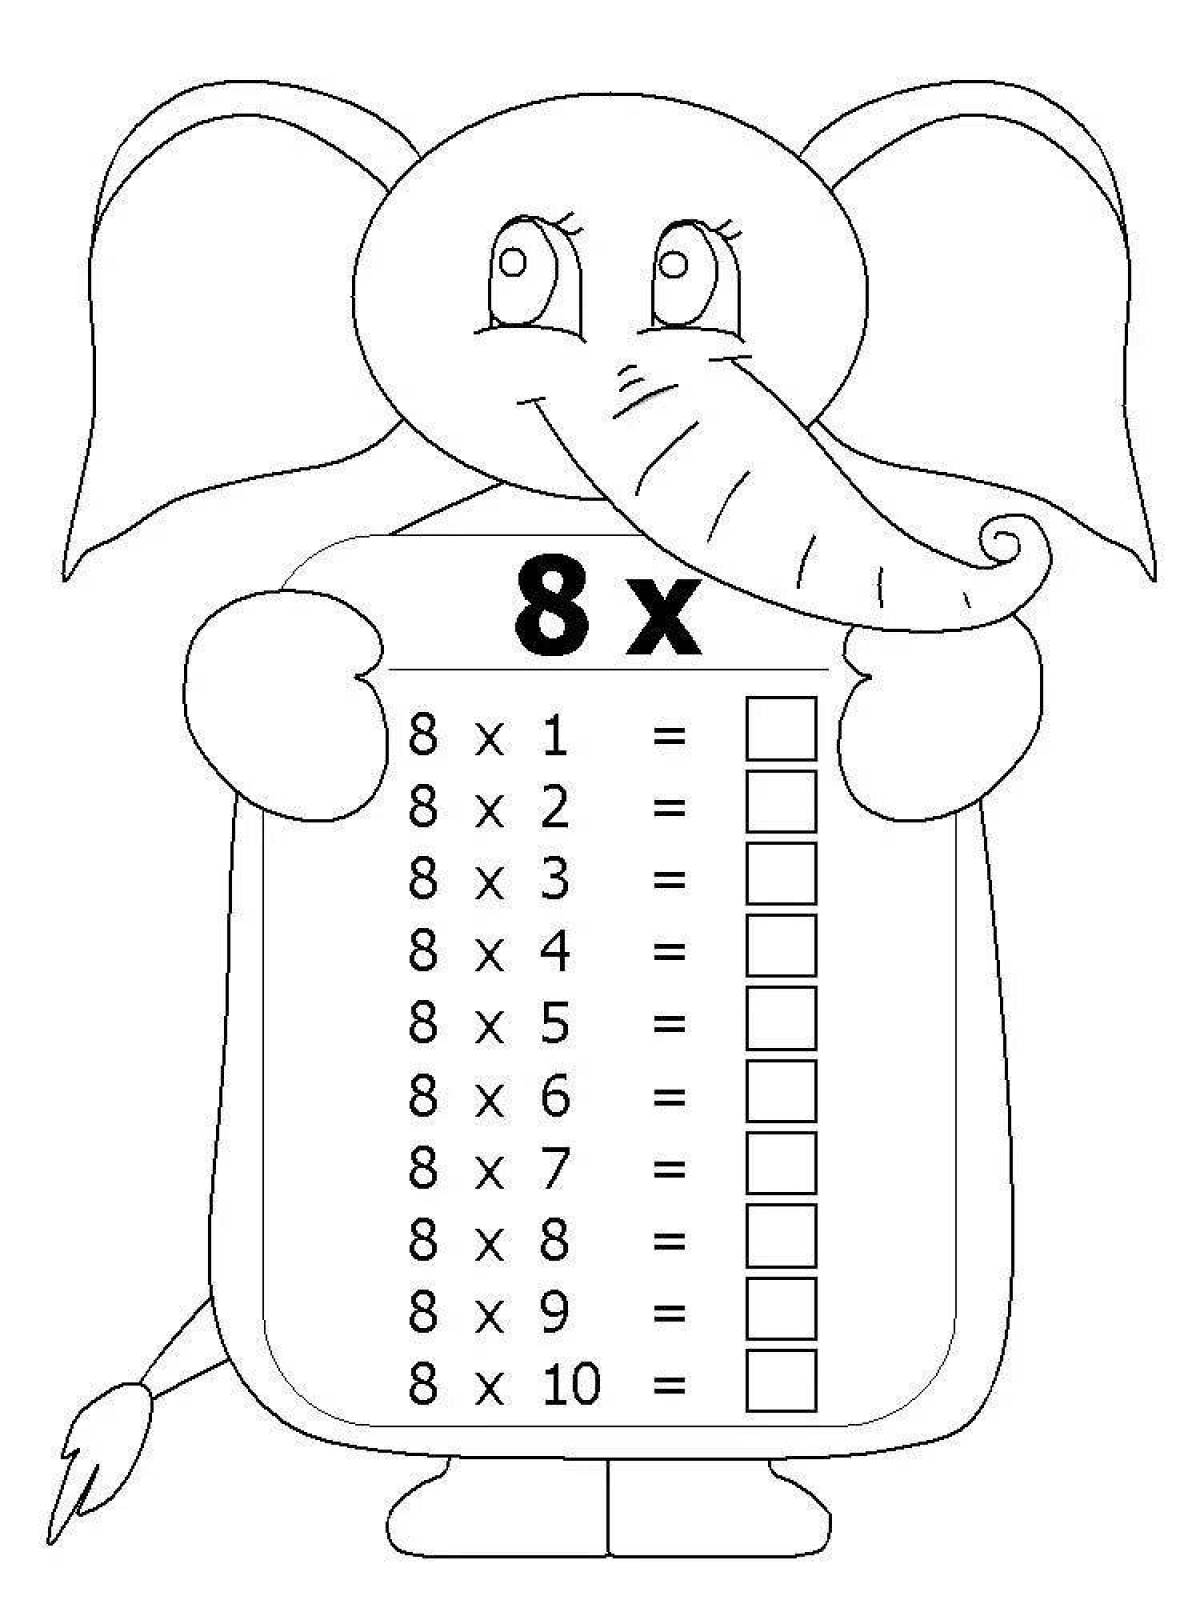 Раскраска волшебная таблица умножения 3x